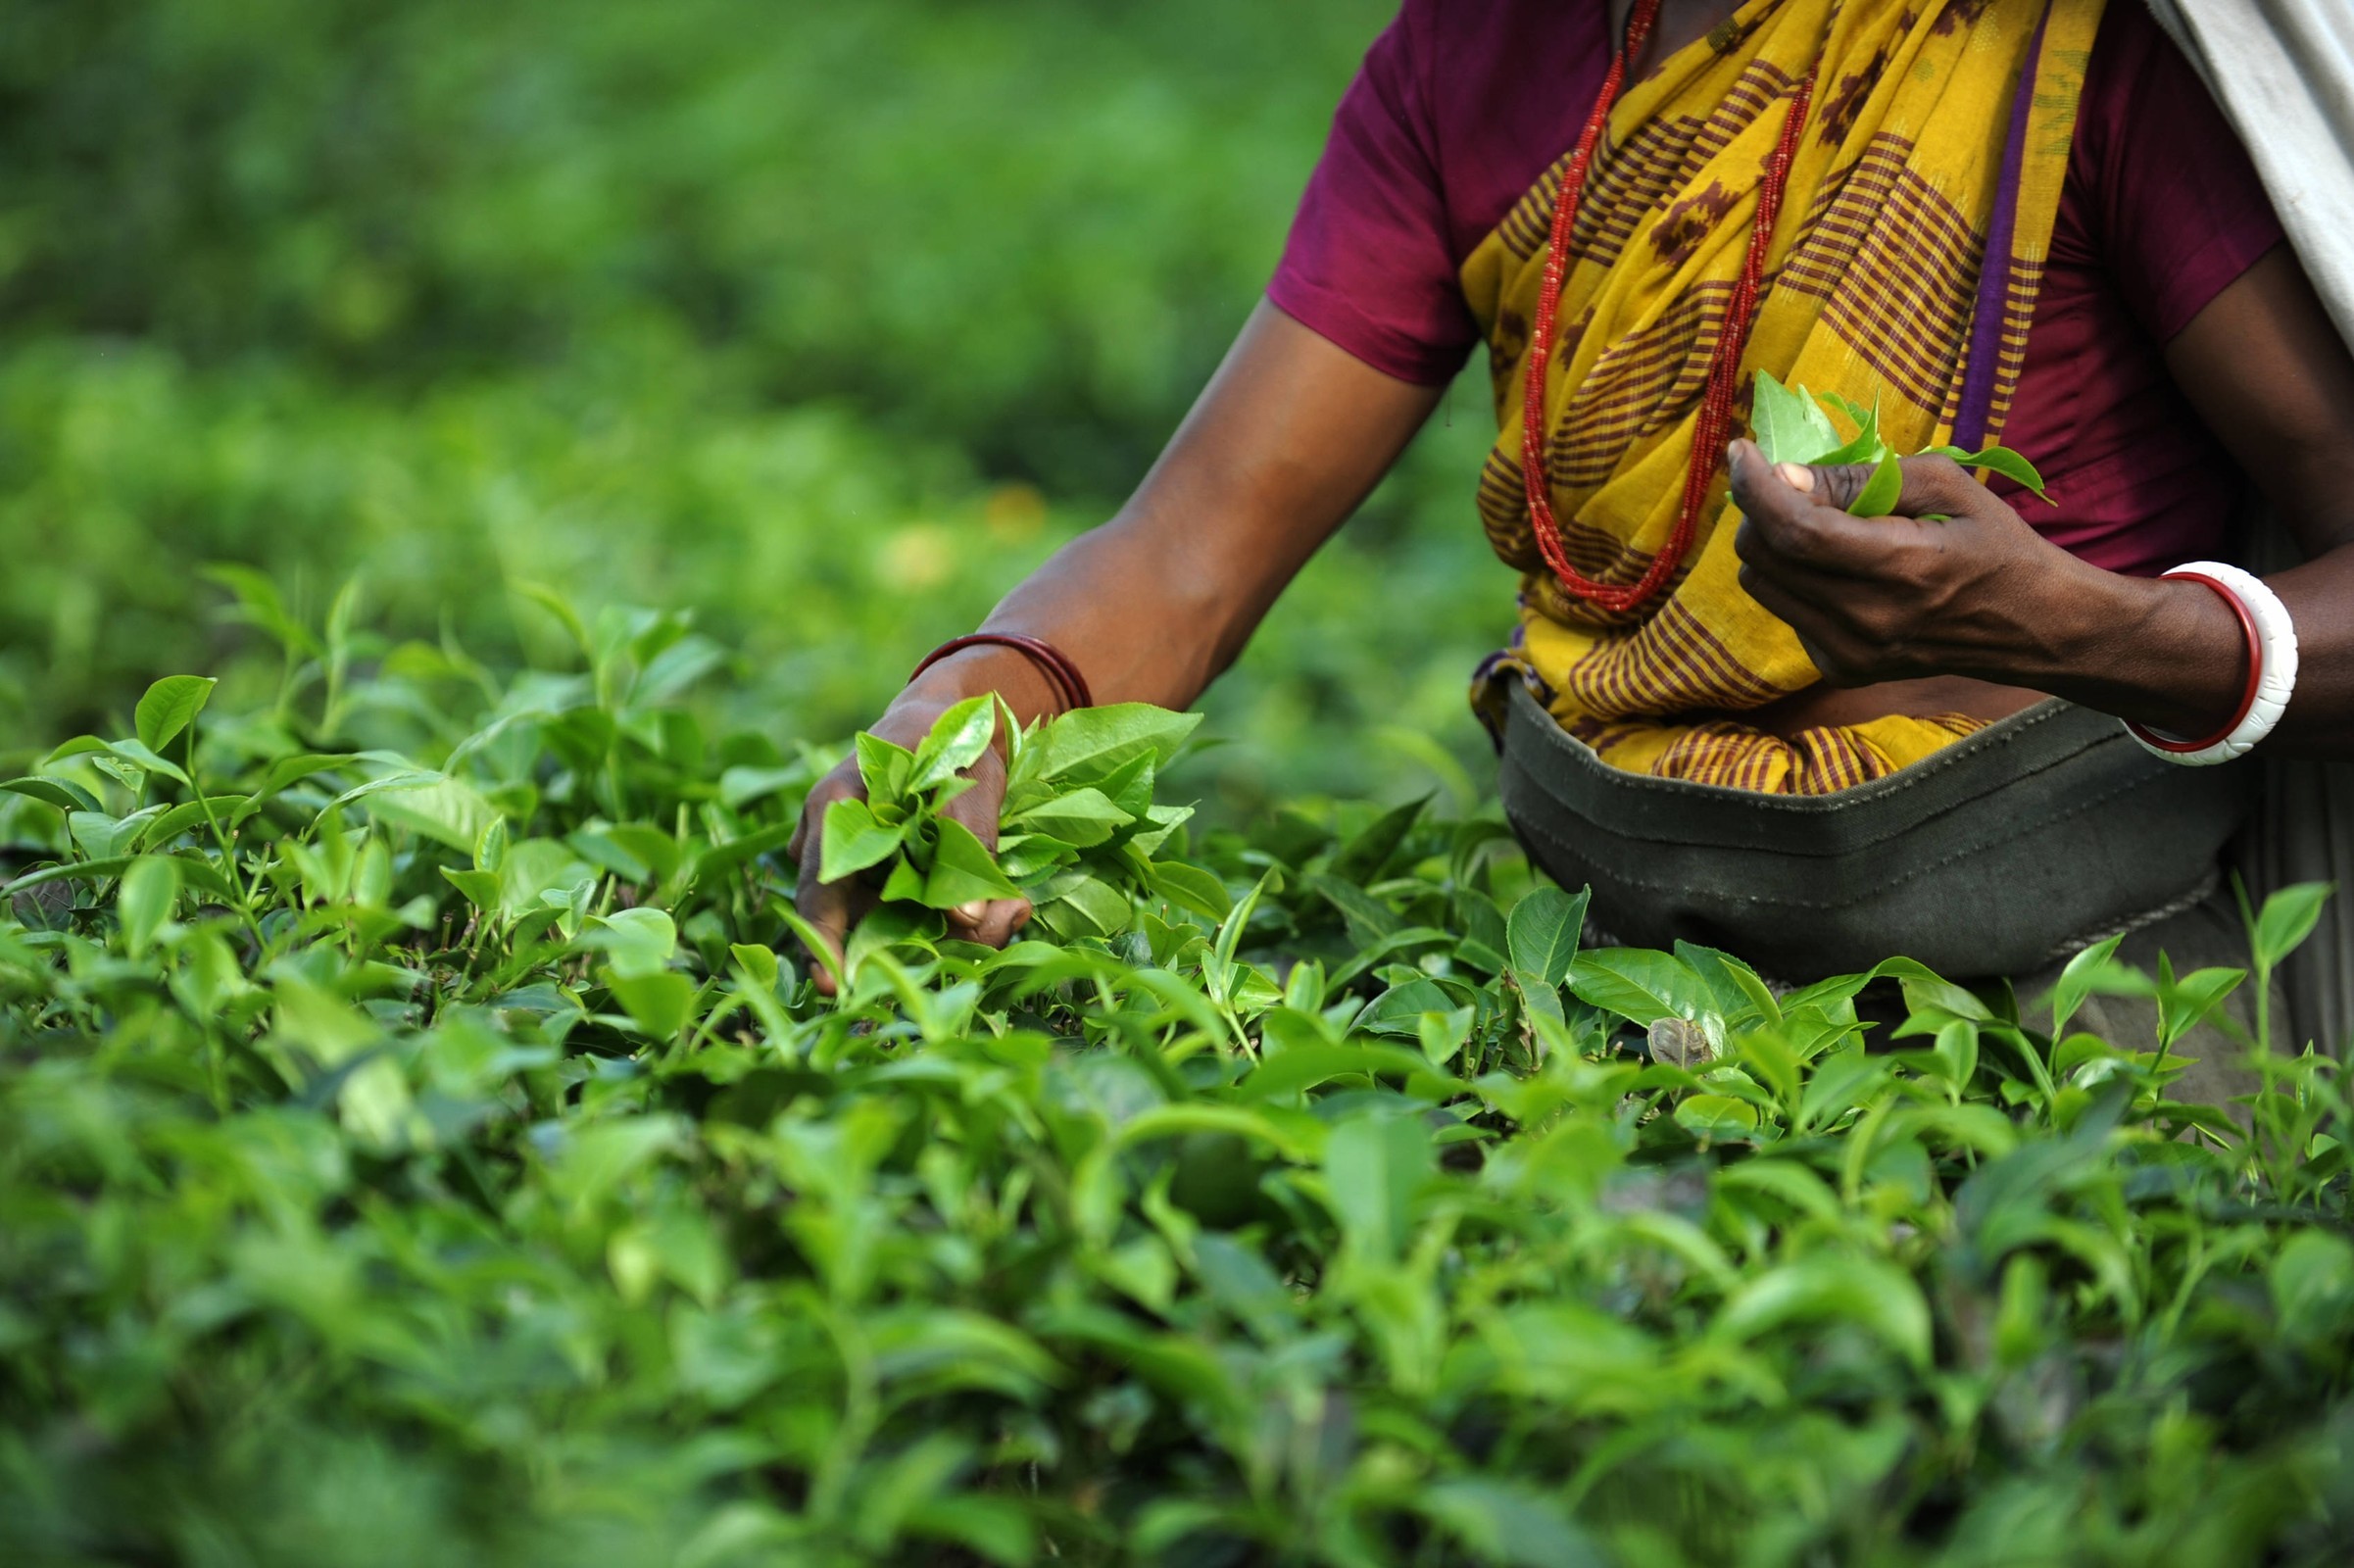 Indian tea garden workers pluck tea leav